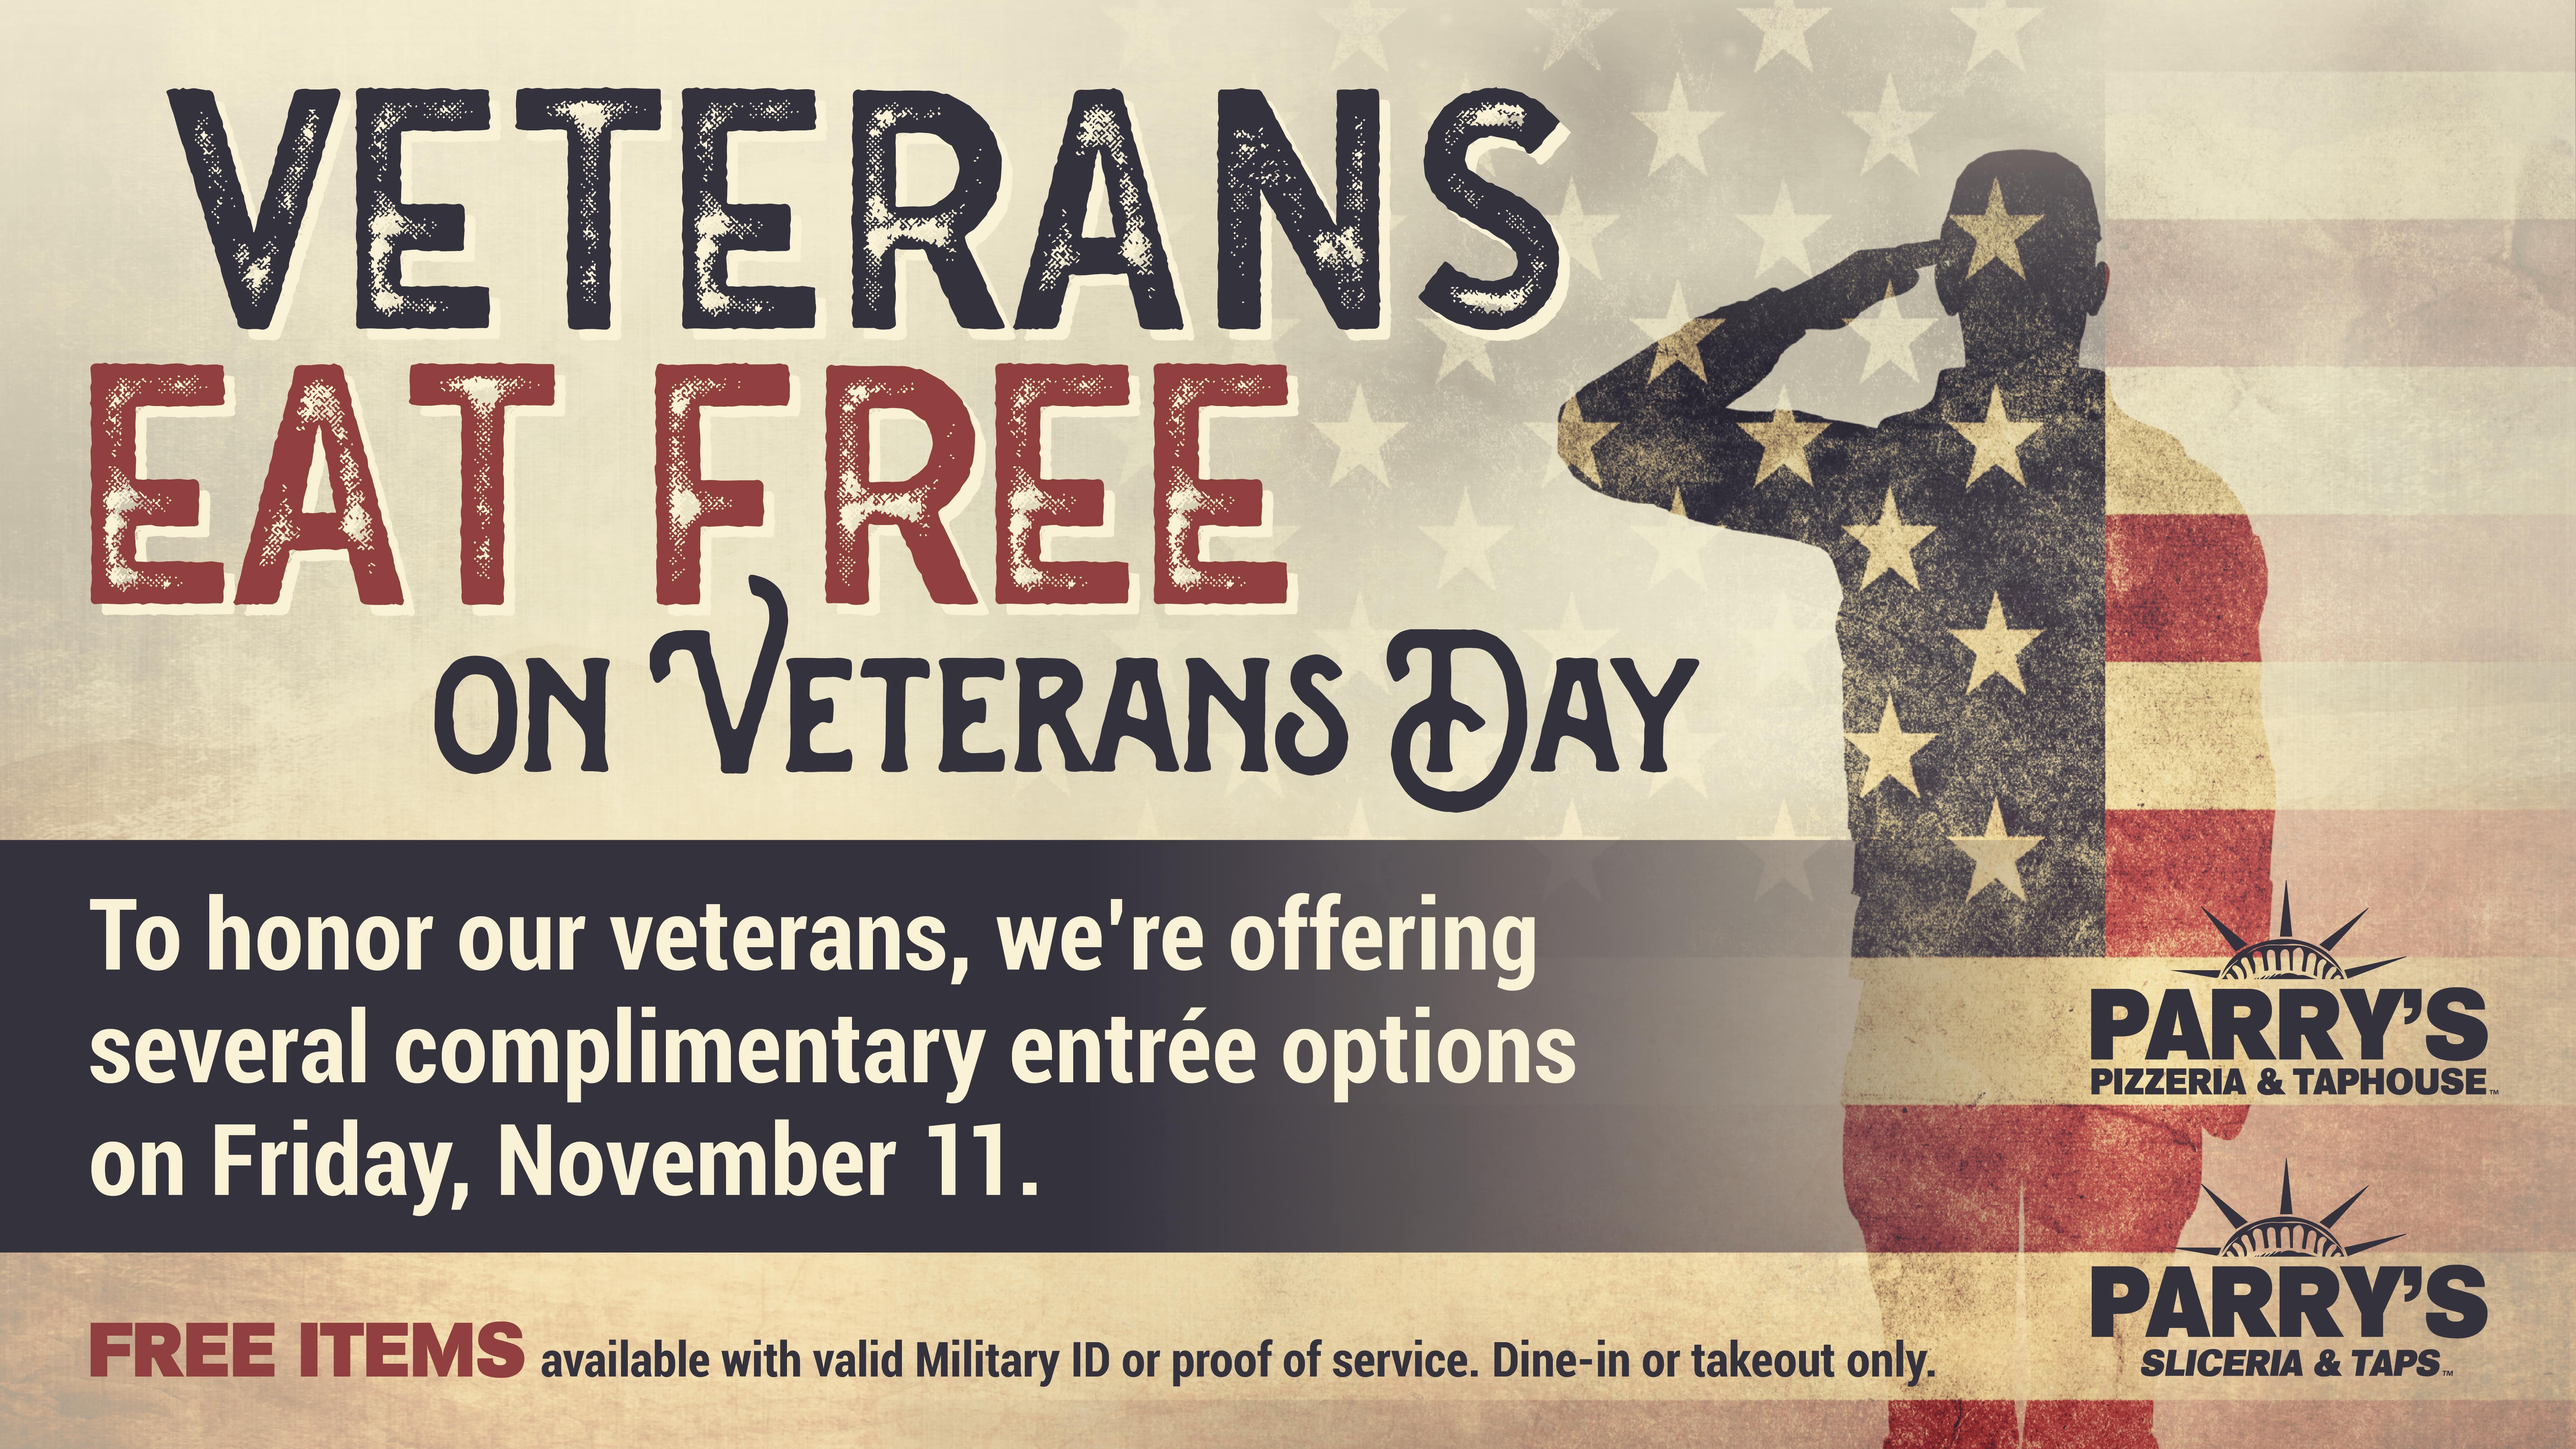 Veterans Eat Free on Veterans Day